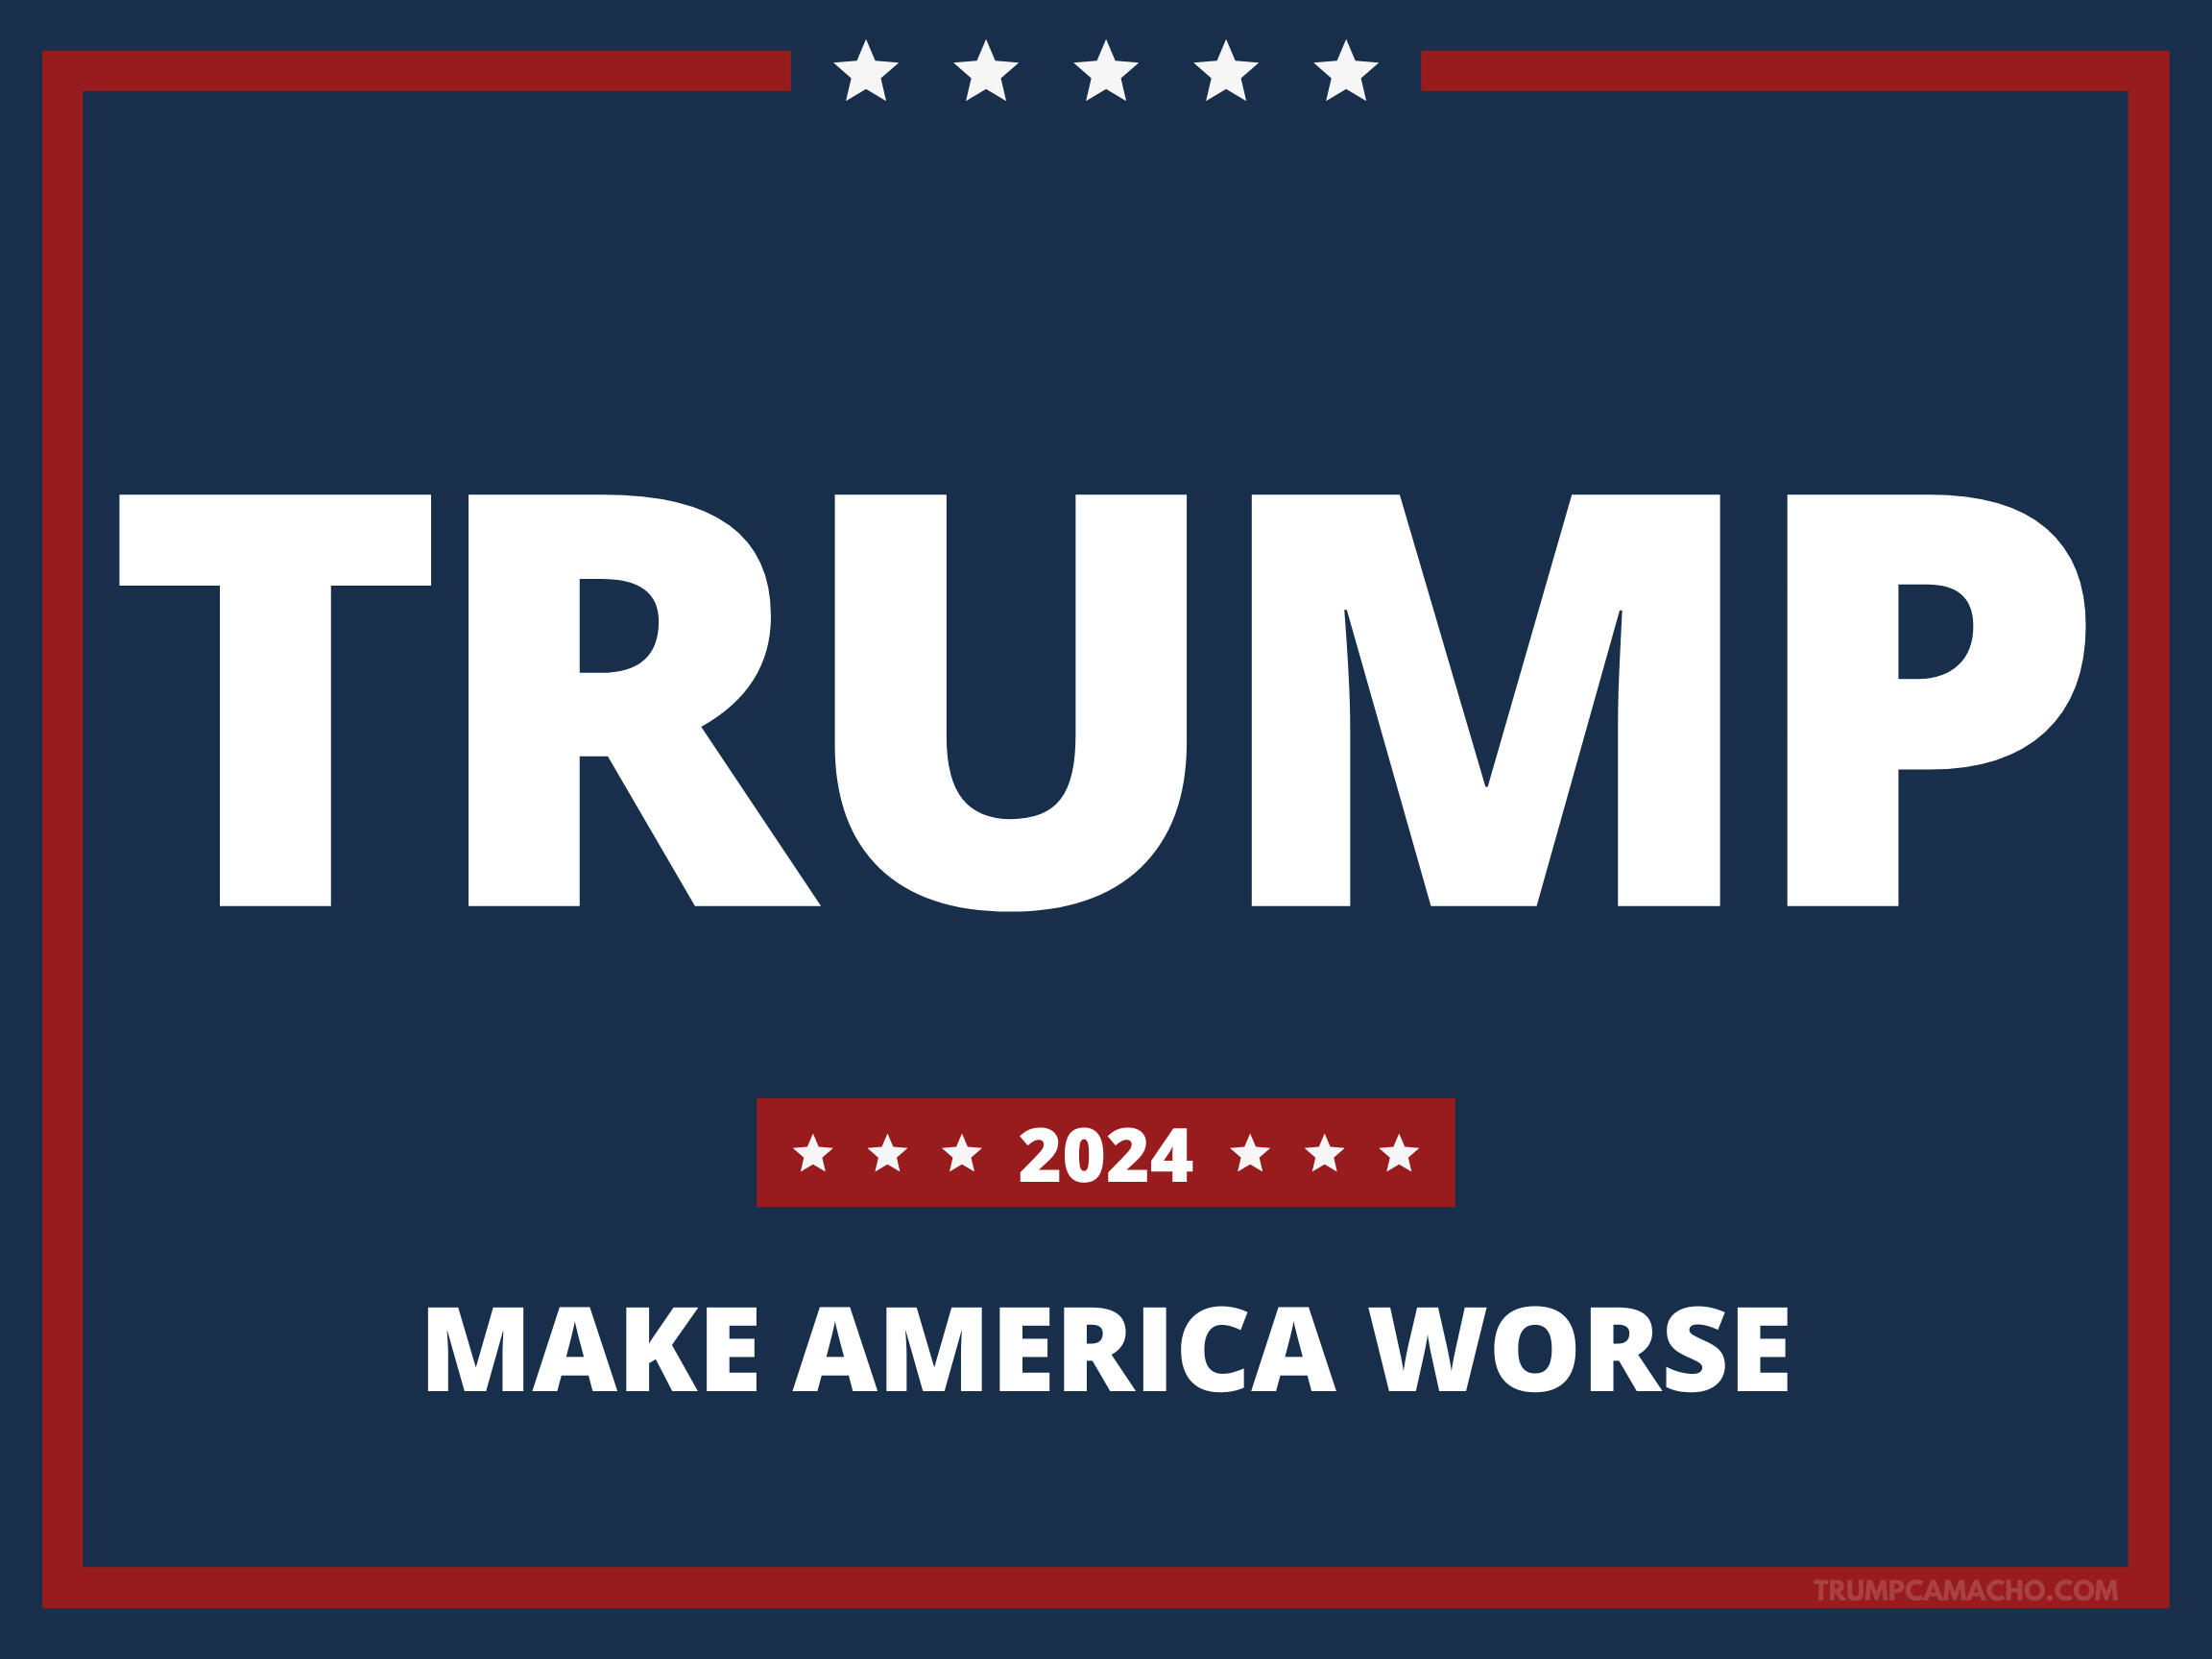 Trump embarrases me. Trump 2024 campaign poster.